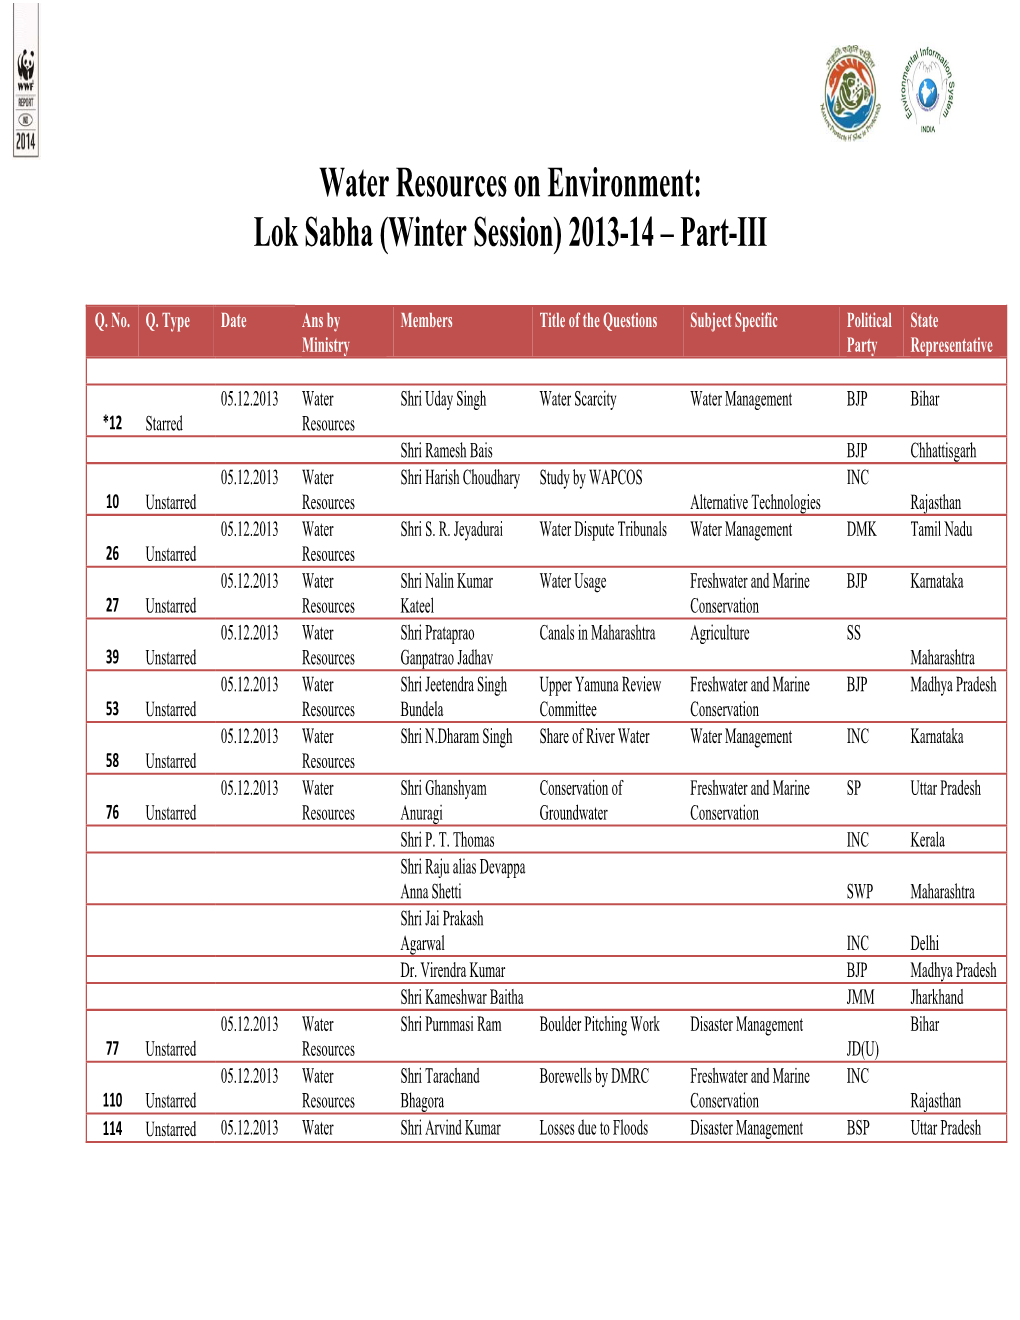 Lok Sabha (Winter Session) 2013-14 – Part-III